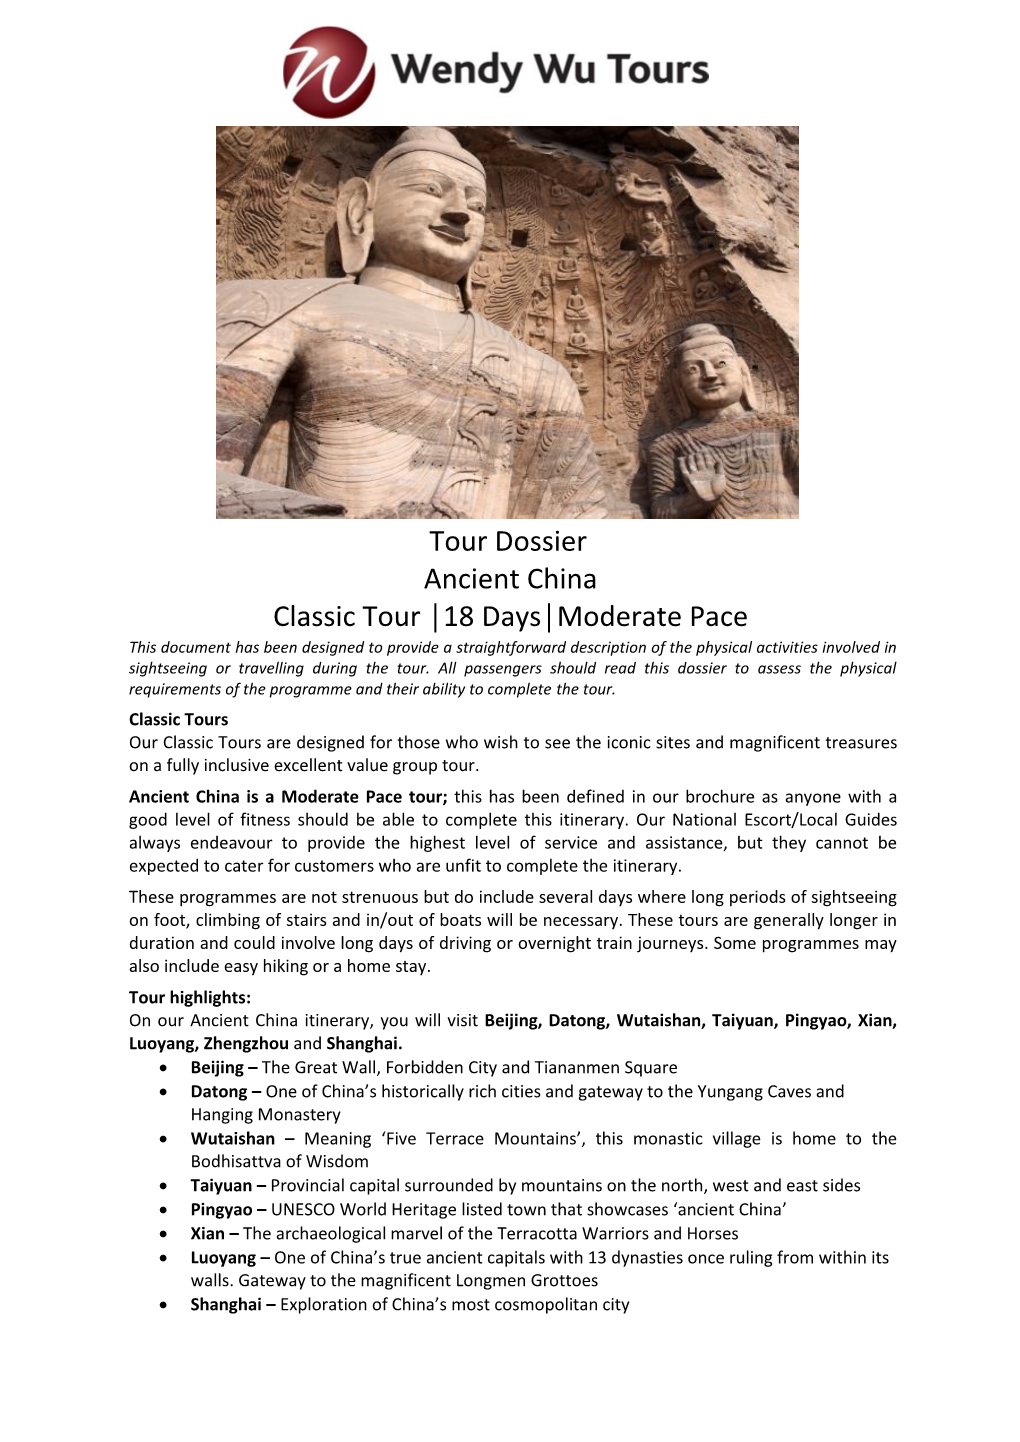 Tour Dossier Ancient China Classic Tour 18